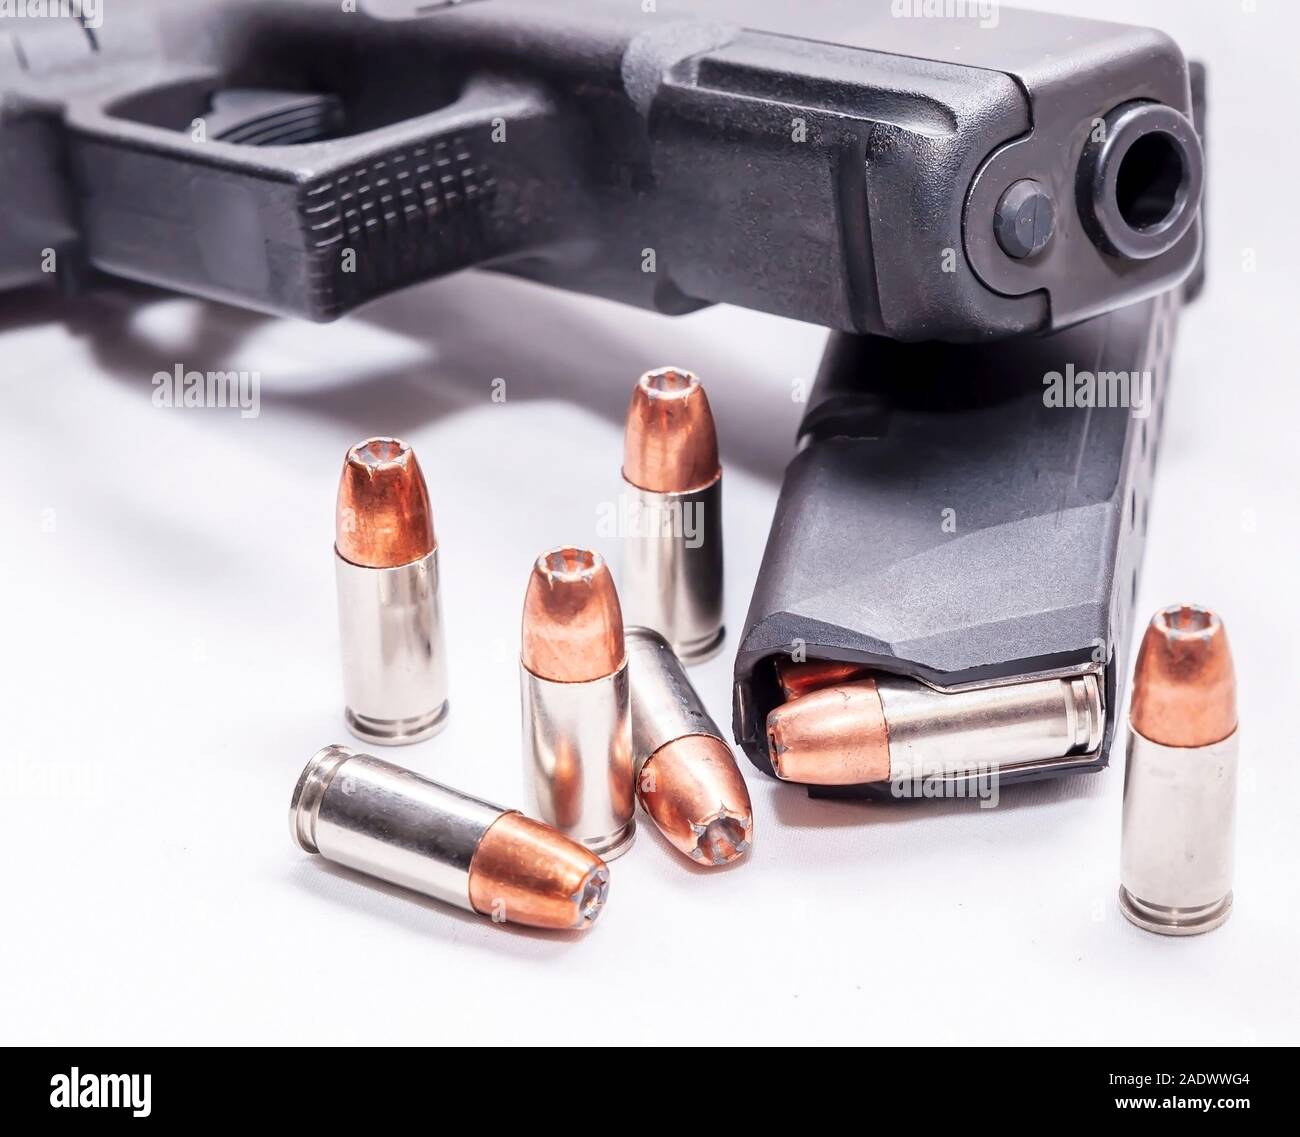 Un nero 9mm pistola sulla parte superiore di un caricatore per pistola caricato con punto di cava elenchi puntati su sfondo bianco Foto Stock